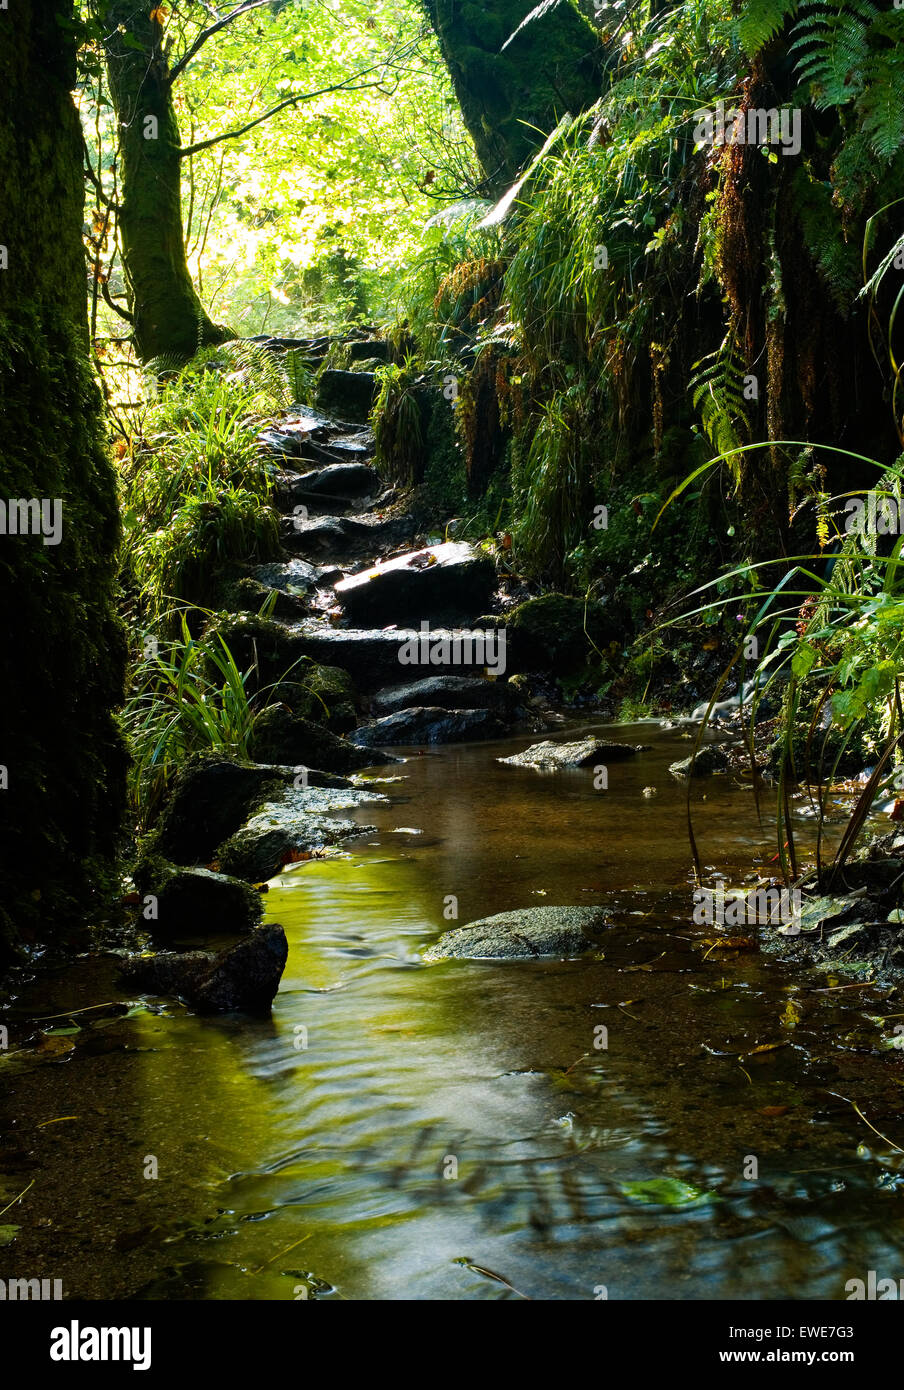 Wasser durch eine felsige Creek in einem dichten grünen Wald fließt. Stockfoto